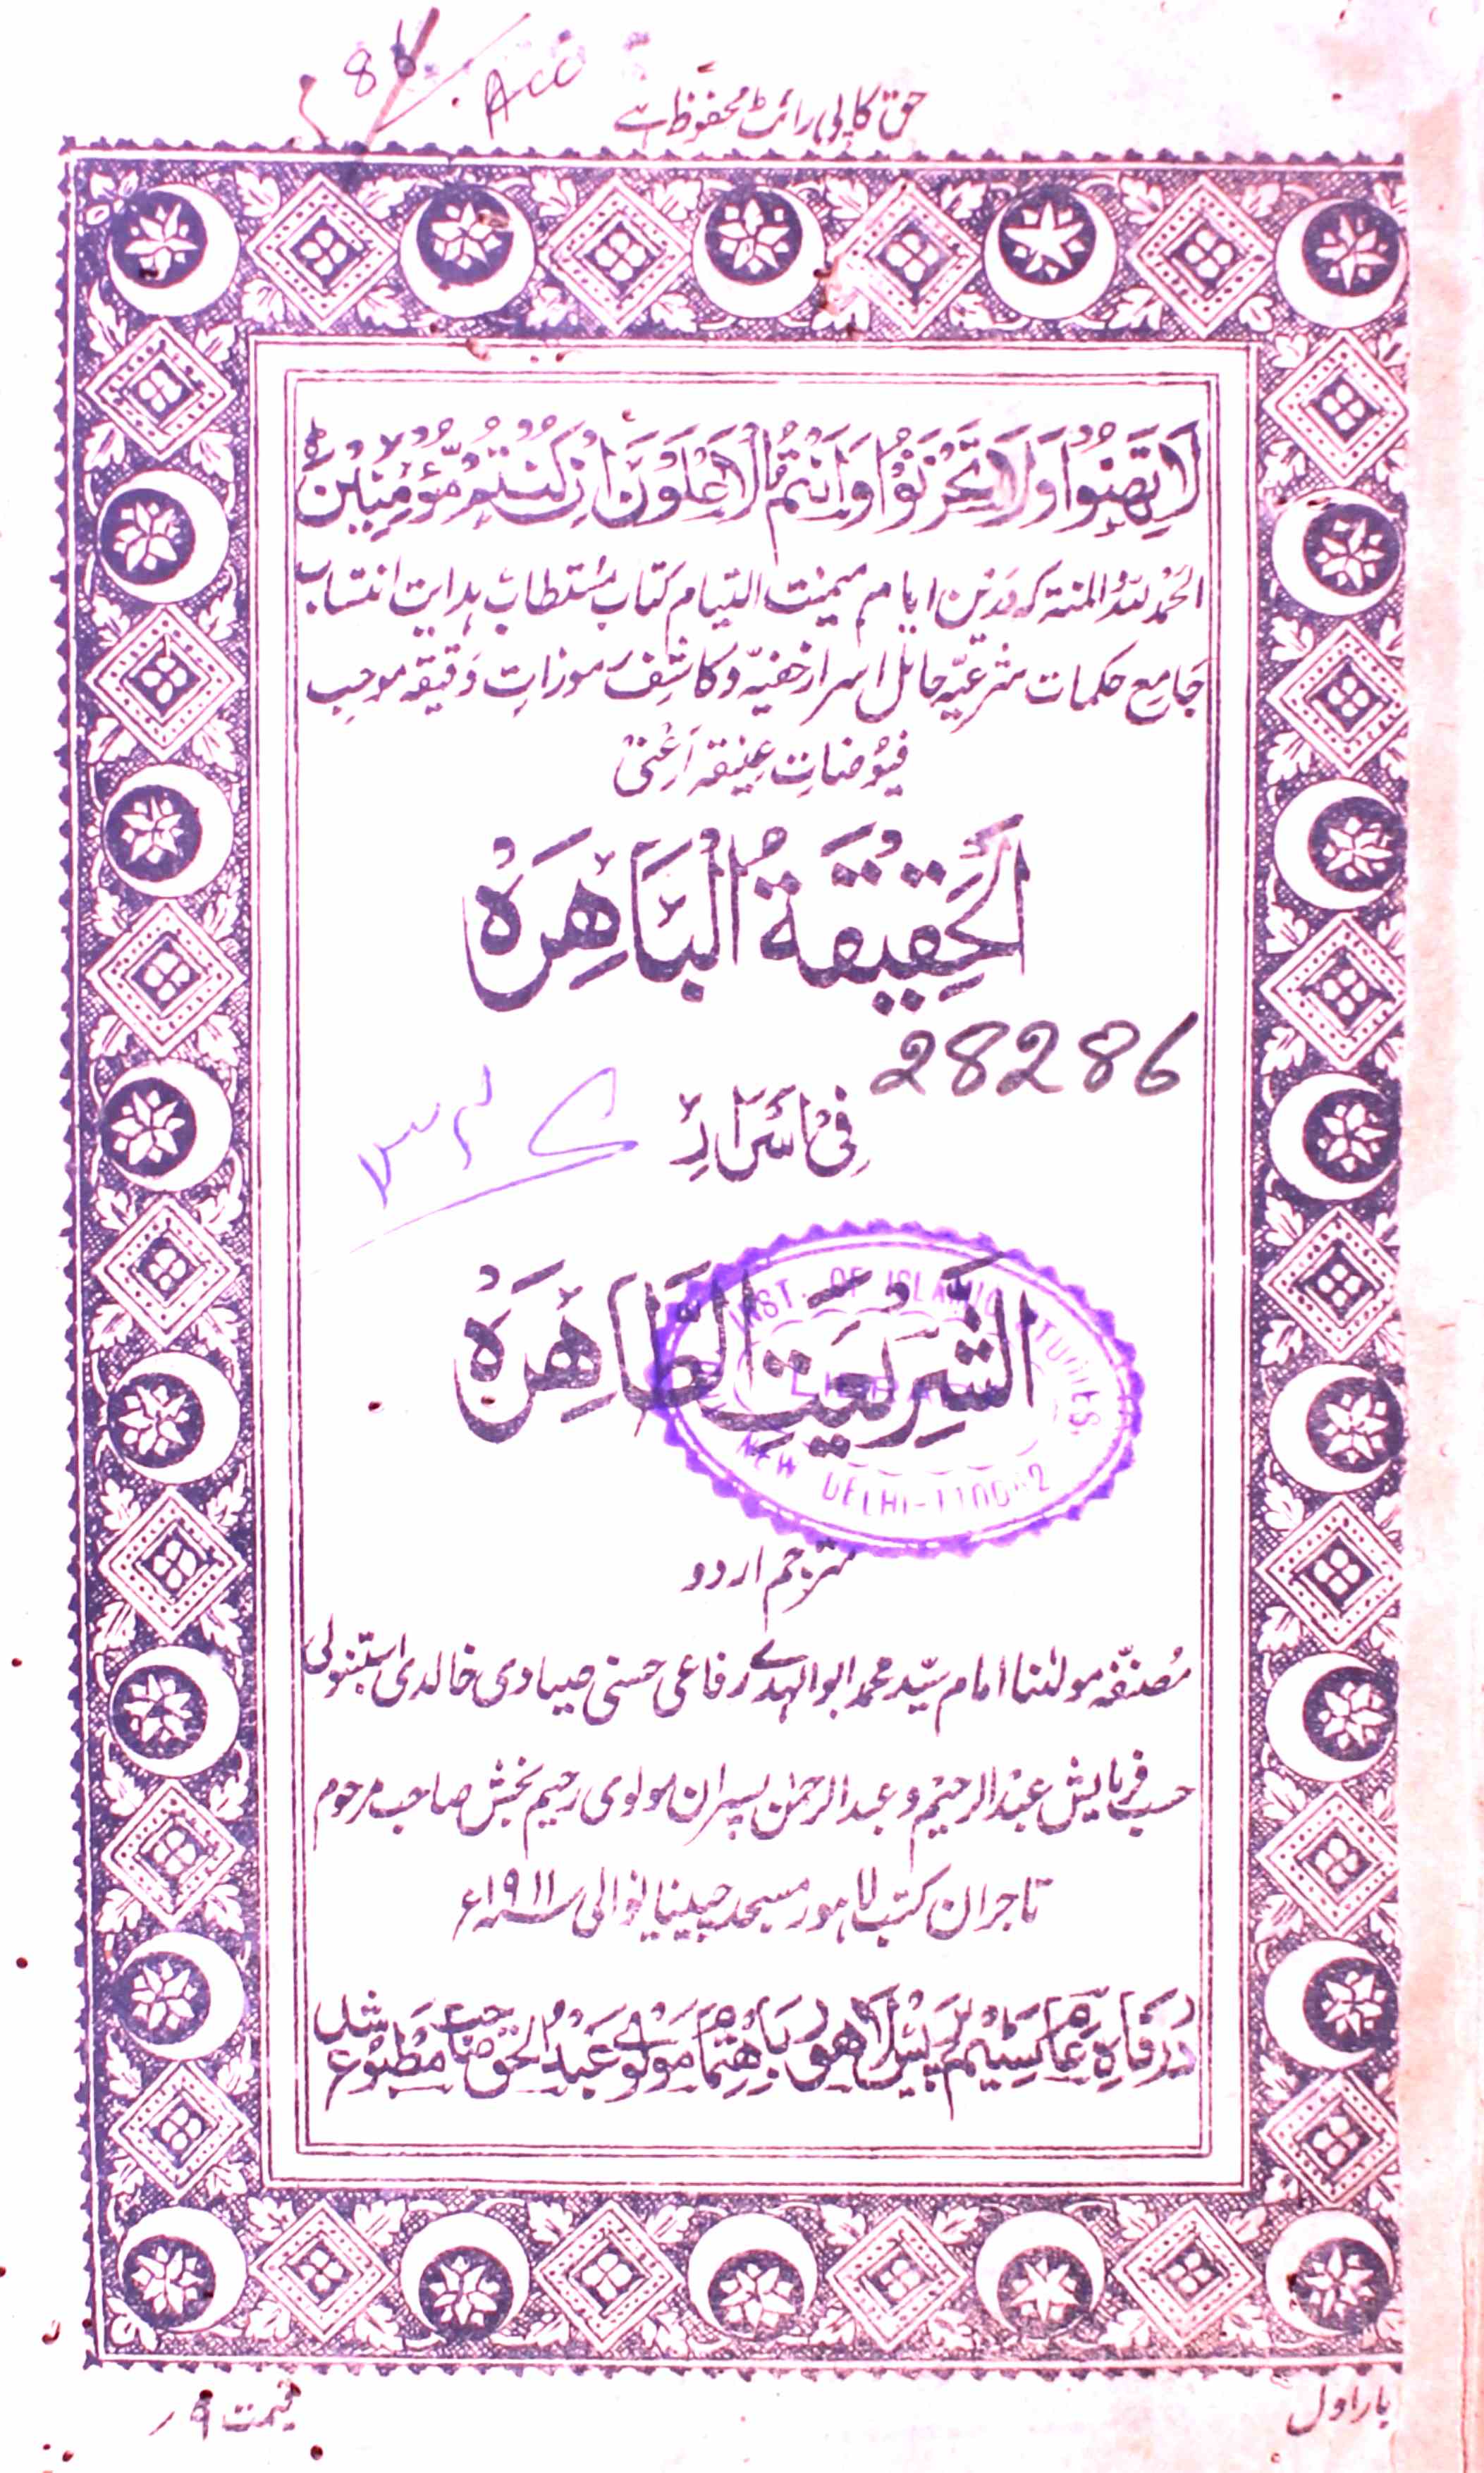 Al-Haqeeqat-ul-Bahira Fi Asrar Shariyat-ut-Tahira